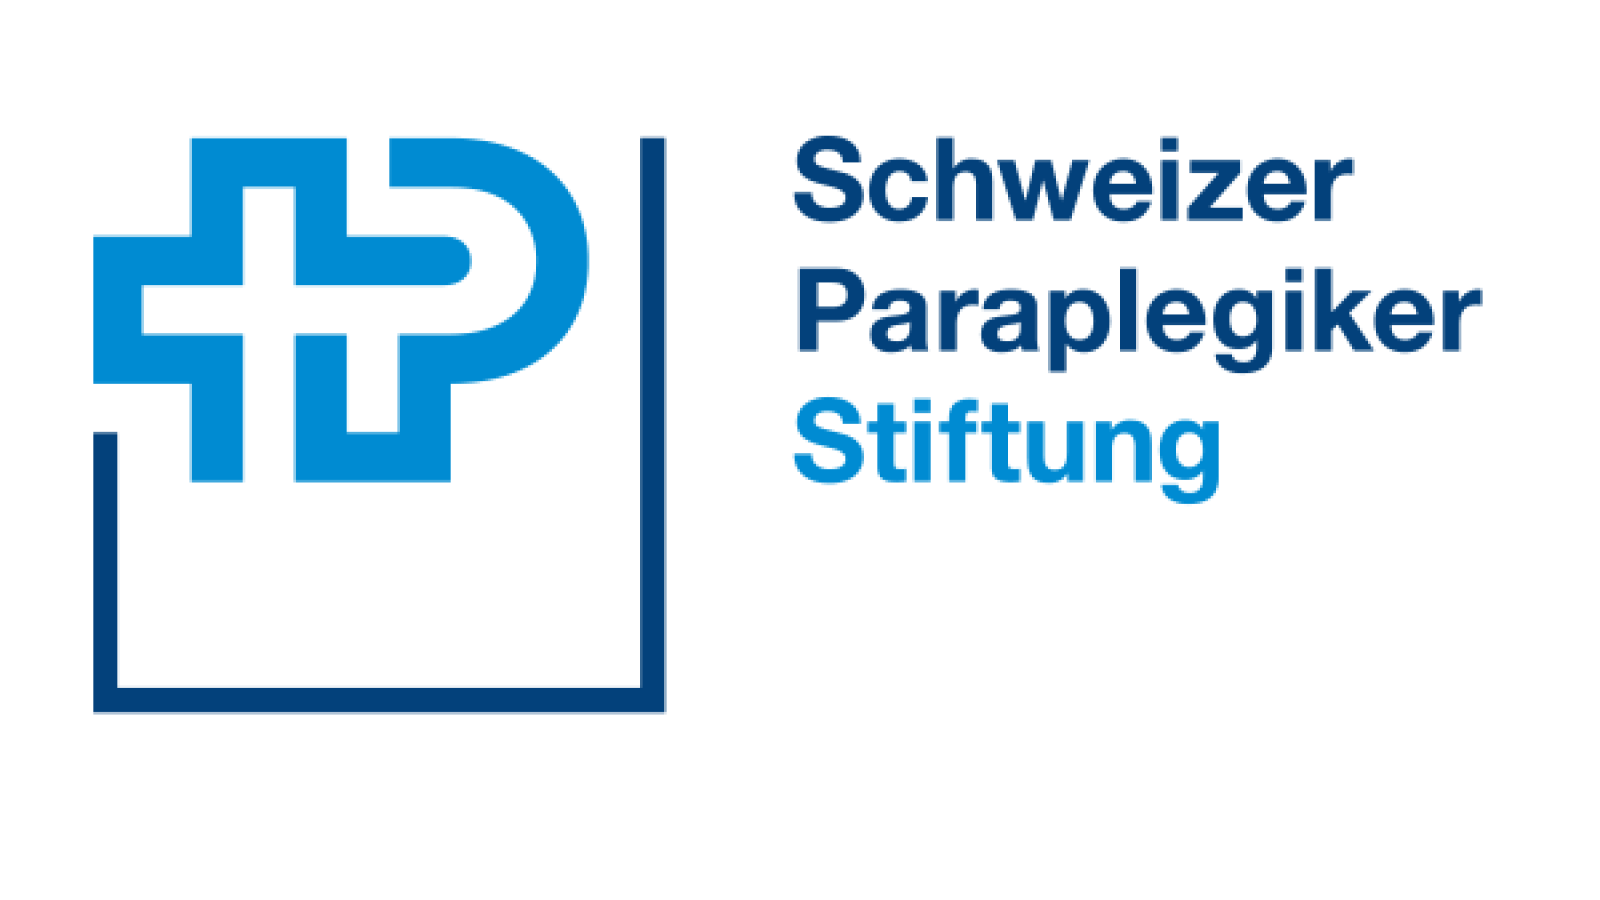 Fondation Suisse pour Paraplégiques